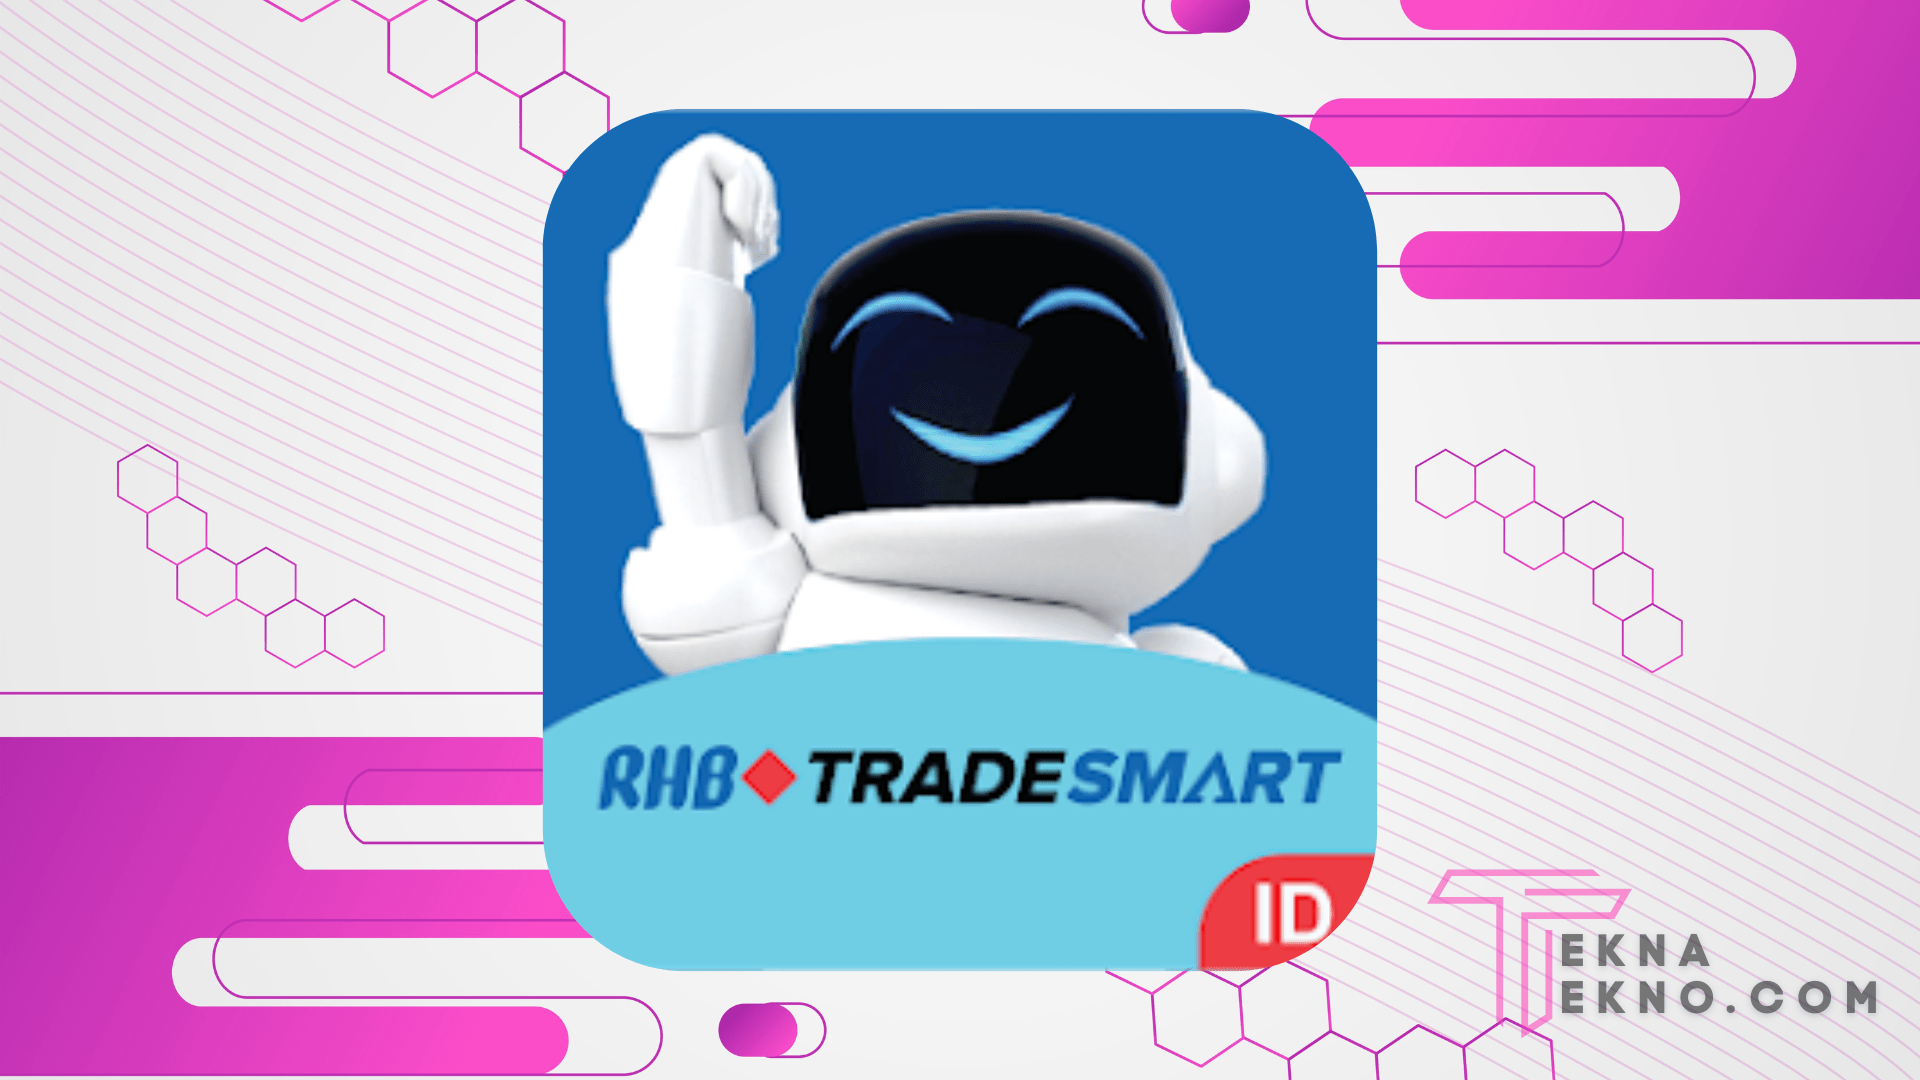 RHB TradeSmart ID